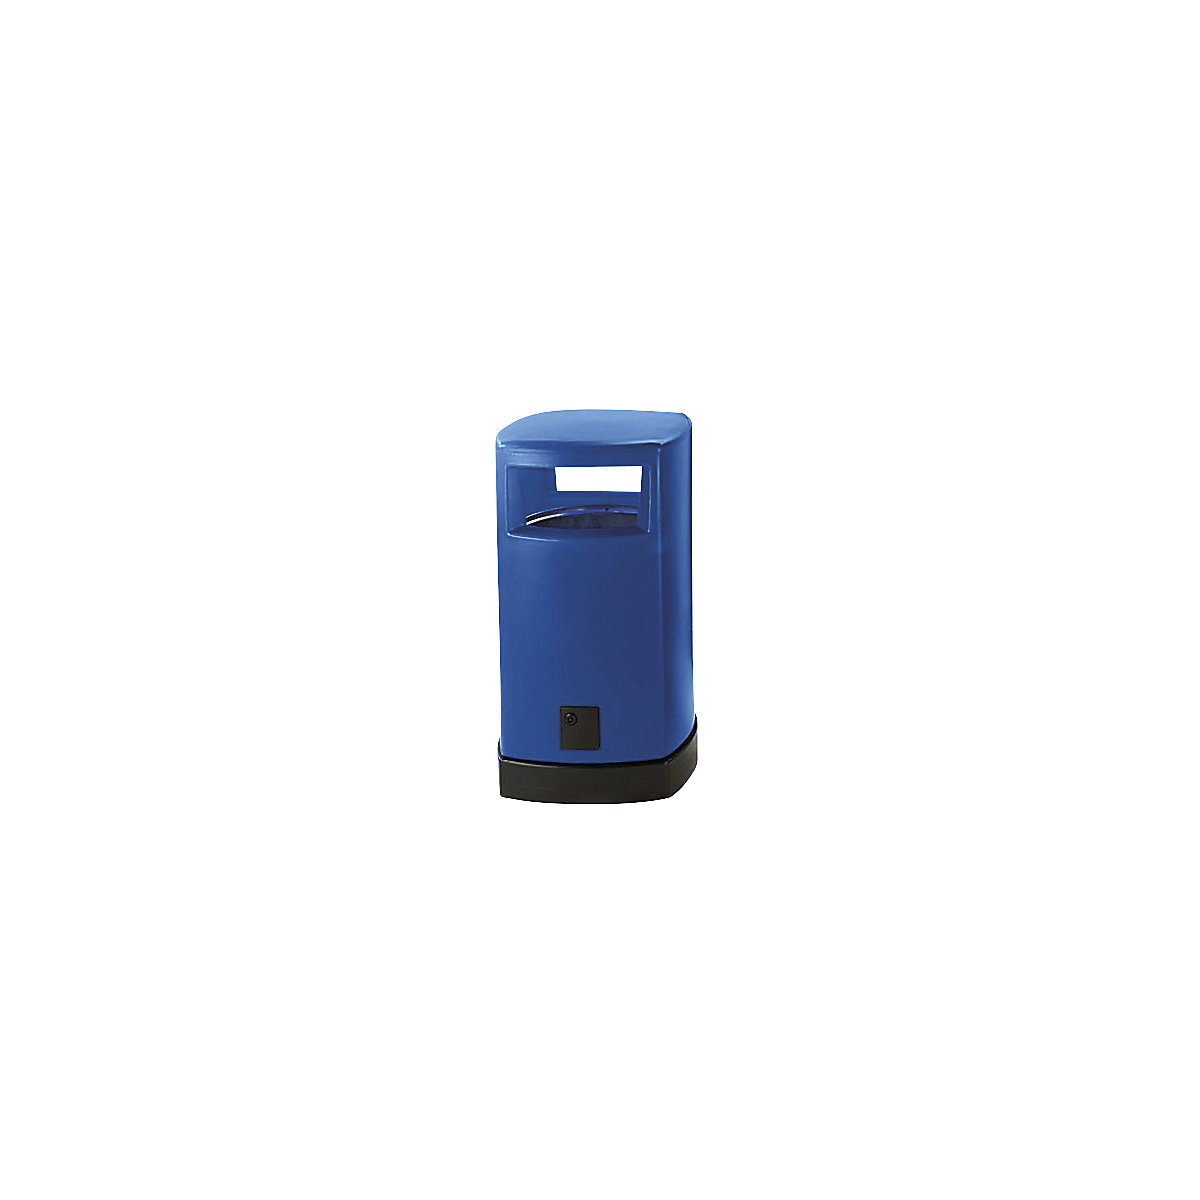 Sběrač odpadů z plastu pro venkovní použití, objem 120 l, š x v x h 580 x 1050 x 580 mm, modrá